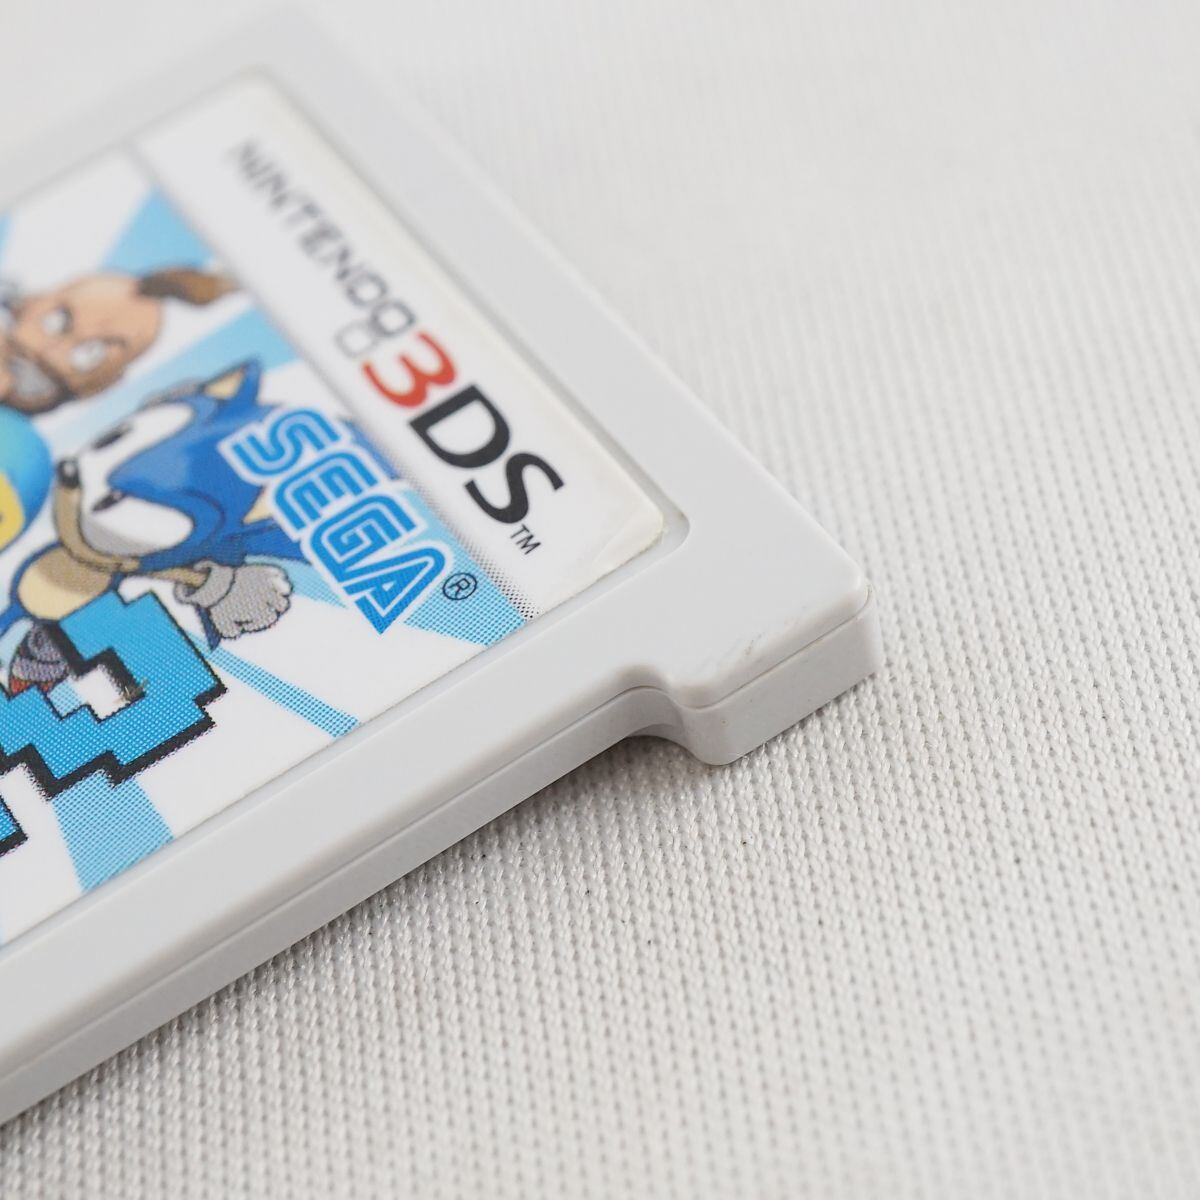 セガ3D復刻アーカイブス2 ソフトのみ USED美品 Nintendo 3DS ニンテンドーケース無 ぷよぷよ ソニック SEGA  ゲーム 完動品 S X4887